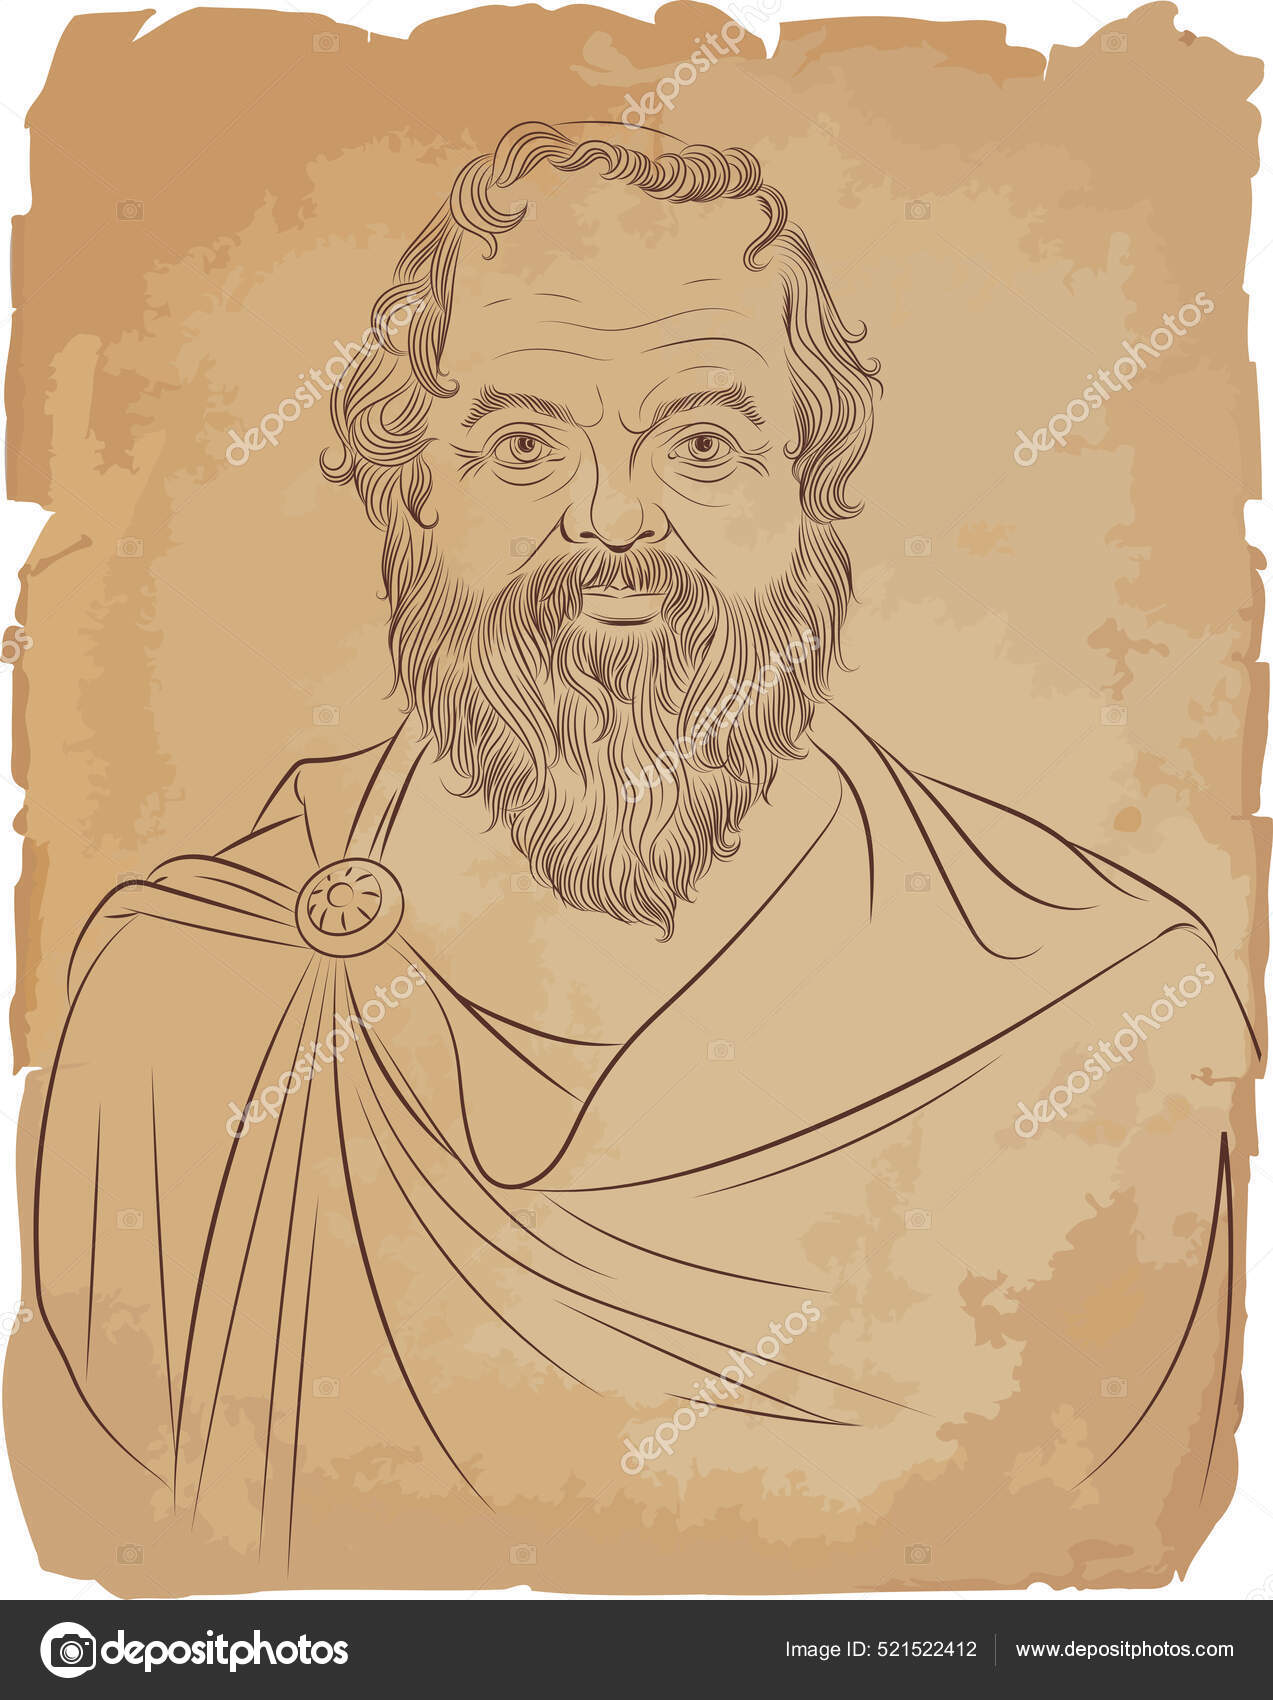 Socrates Greek Philosopher Making the Loser Hand Gesture Mono Line Art  26499572 Vector Art at Vecteezy